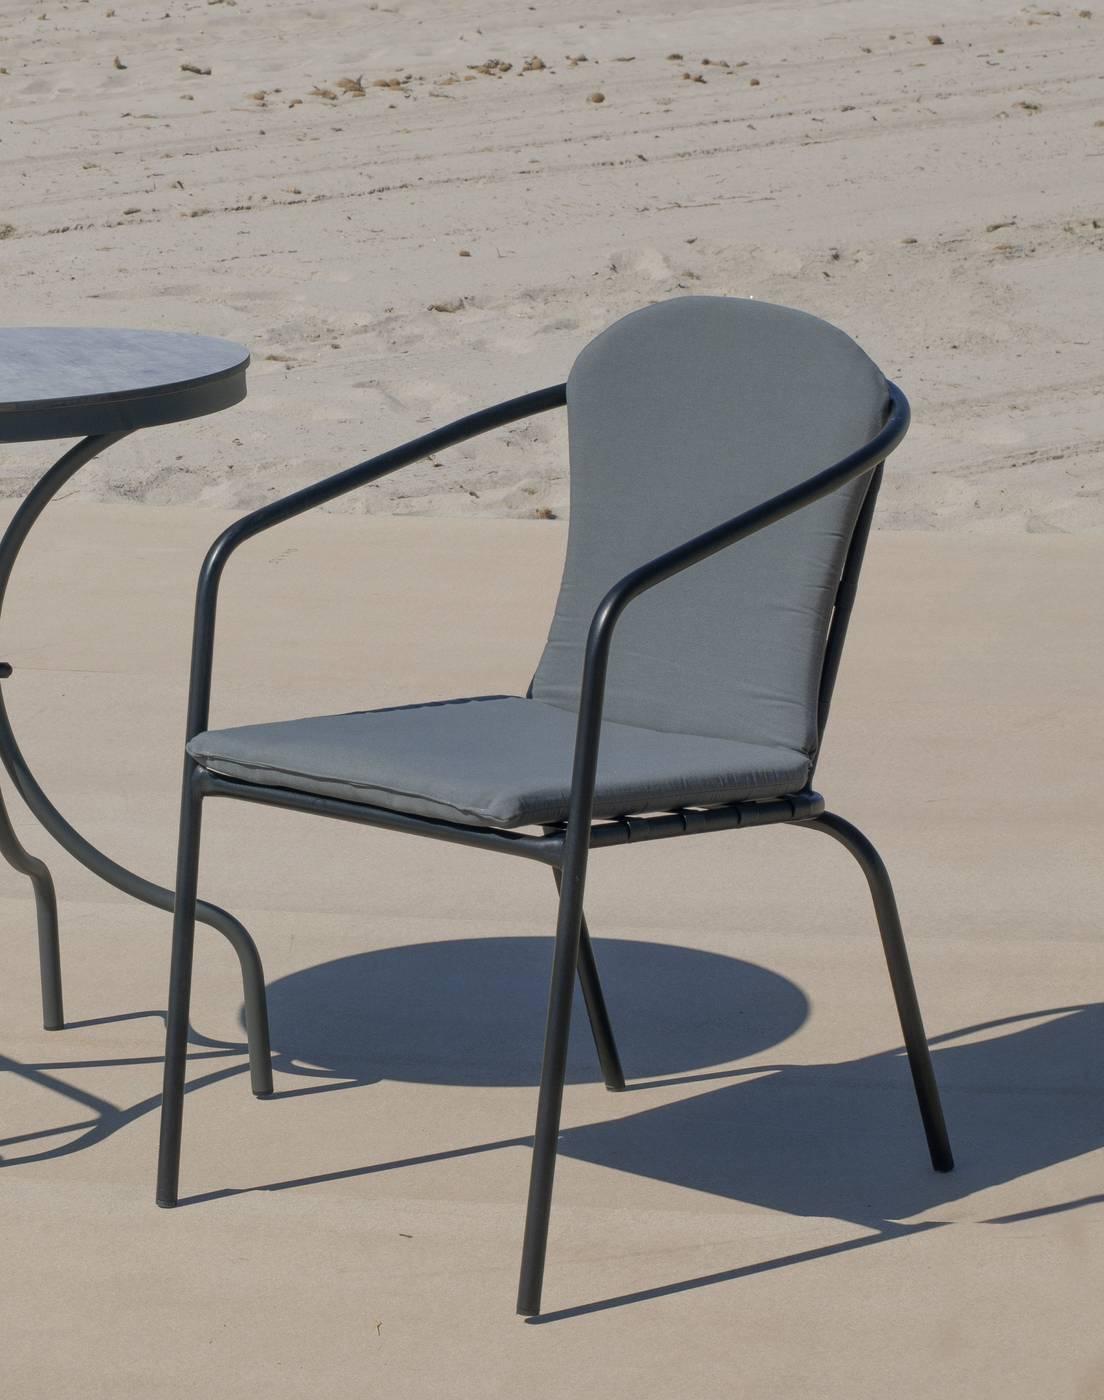 Sillón Aluminio Marsel - Sillón apilable de aluminio color marrón o antracita, con cojín asiento y respaldo a juego.